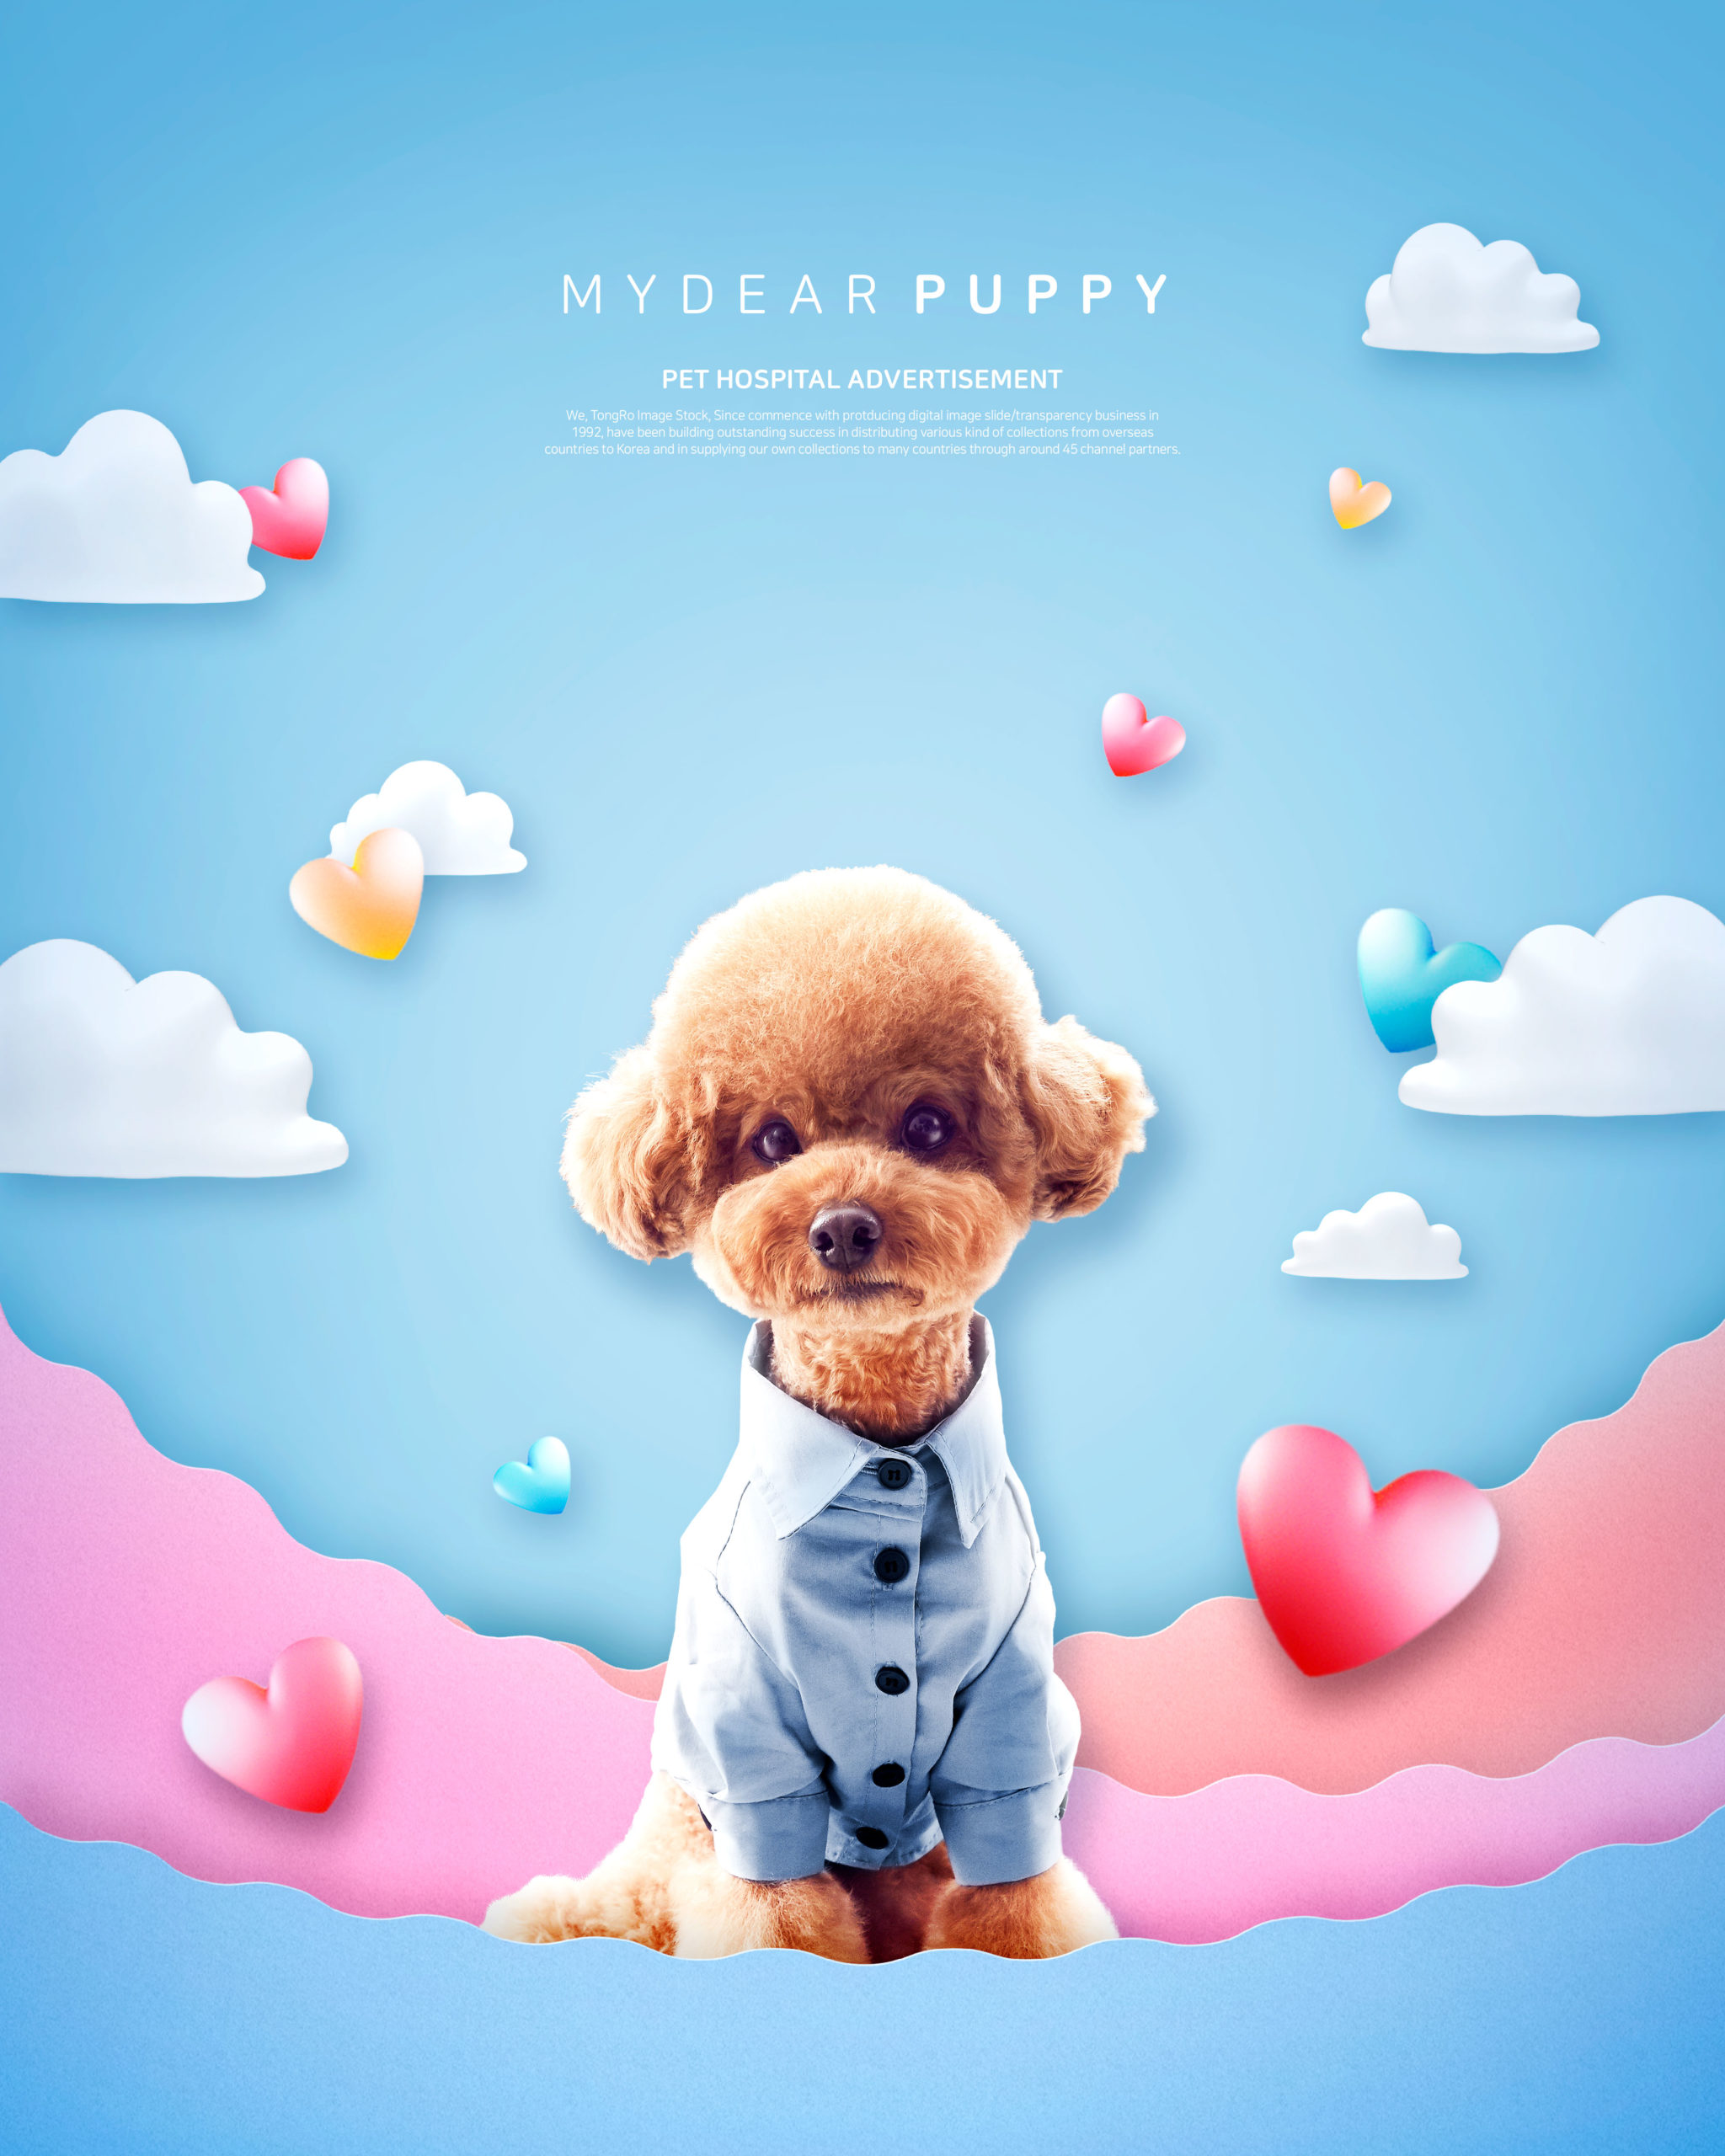 创意可爱的小狗宠物医院广告海报模板套装插图(5)